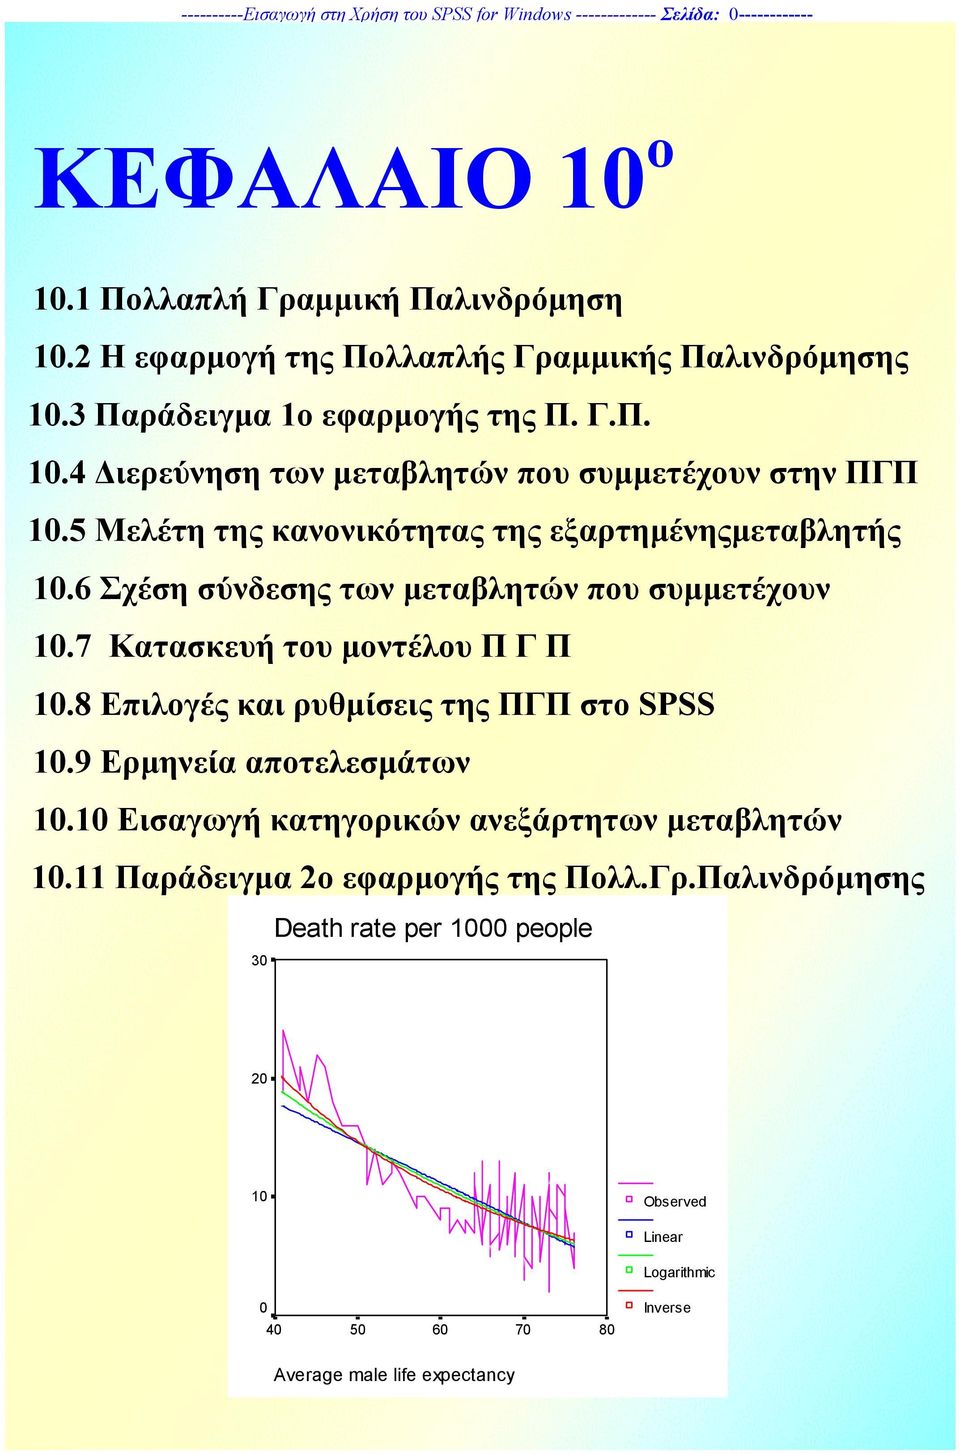 5 Μελέτη της κανονικότητας της εξαρτηµένηςµεταβλητής 10.6 Σχέση σύνδεσης των µεταβλητών που συµµετέχουν 10.7 Κατασκευή του µοντέλου Π Γ Π 10.